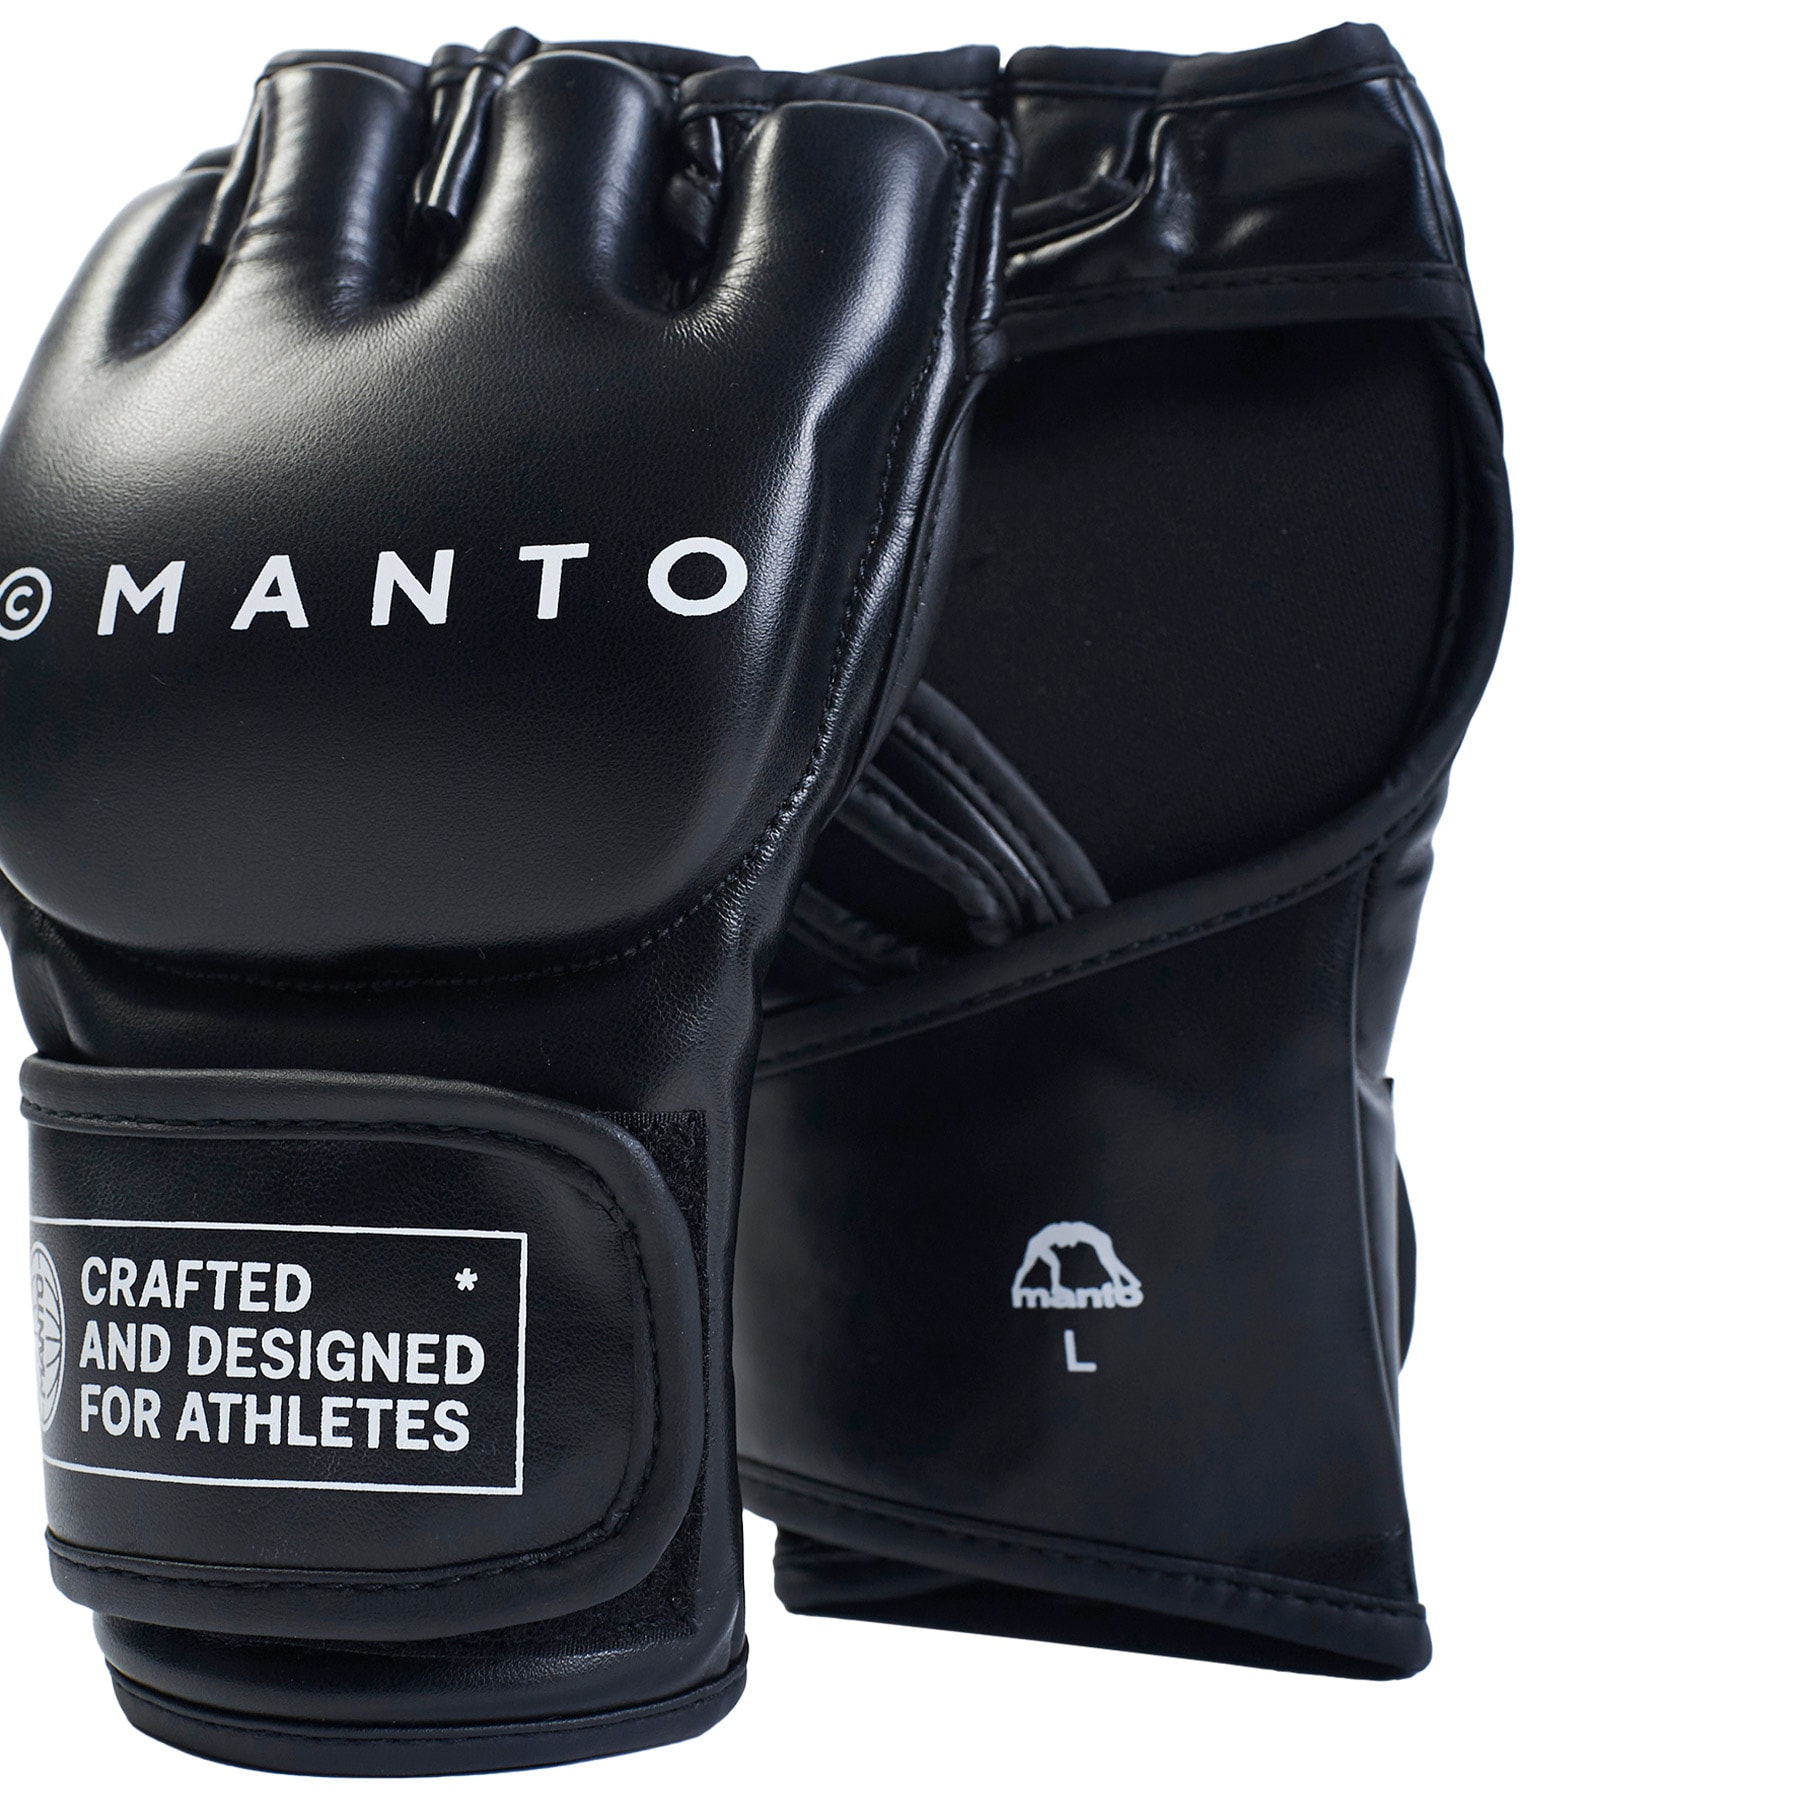 Rękawice do MMA Manto Impact - Czarne